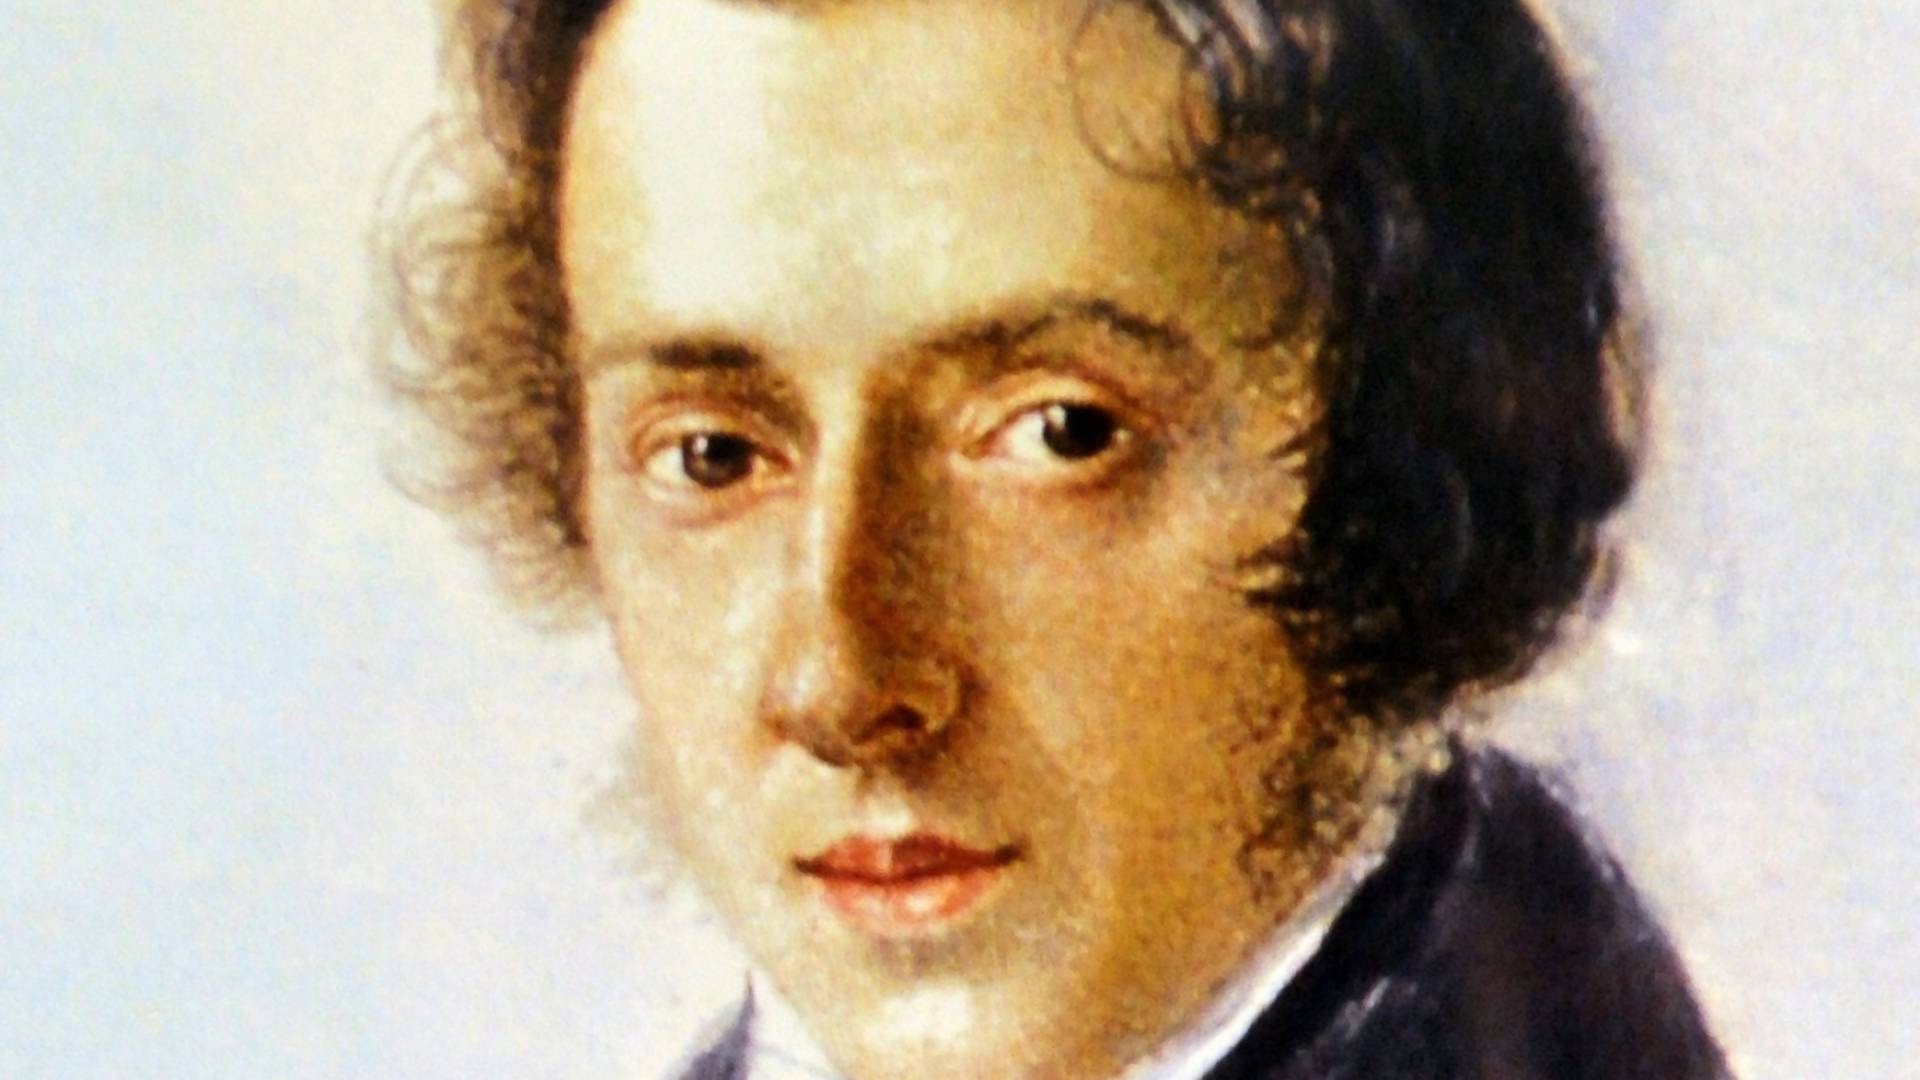 Listy miłosne Chopina dedykowane były mężczyznom, ale nikt nigdy nie nazwał go homoseksualistą